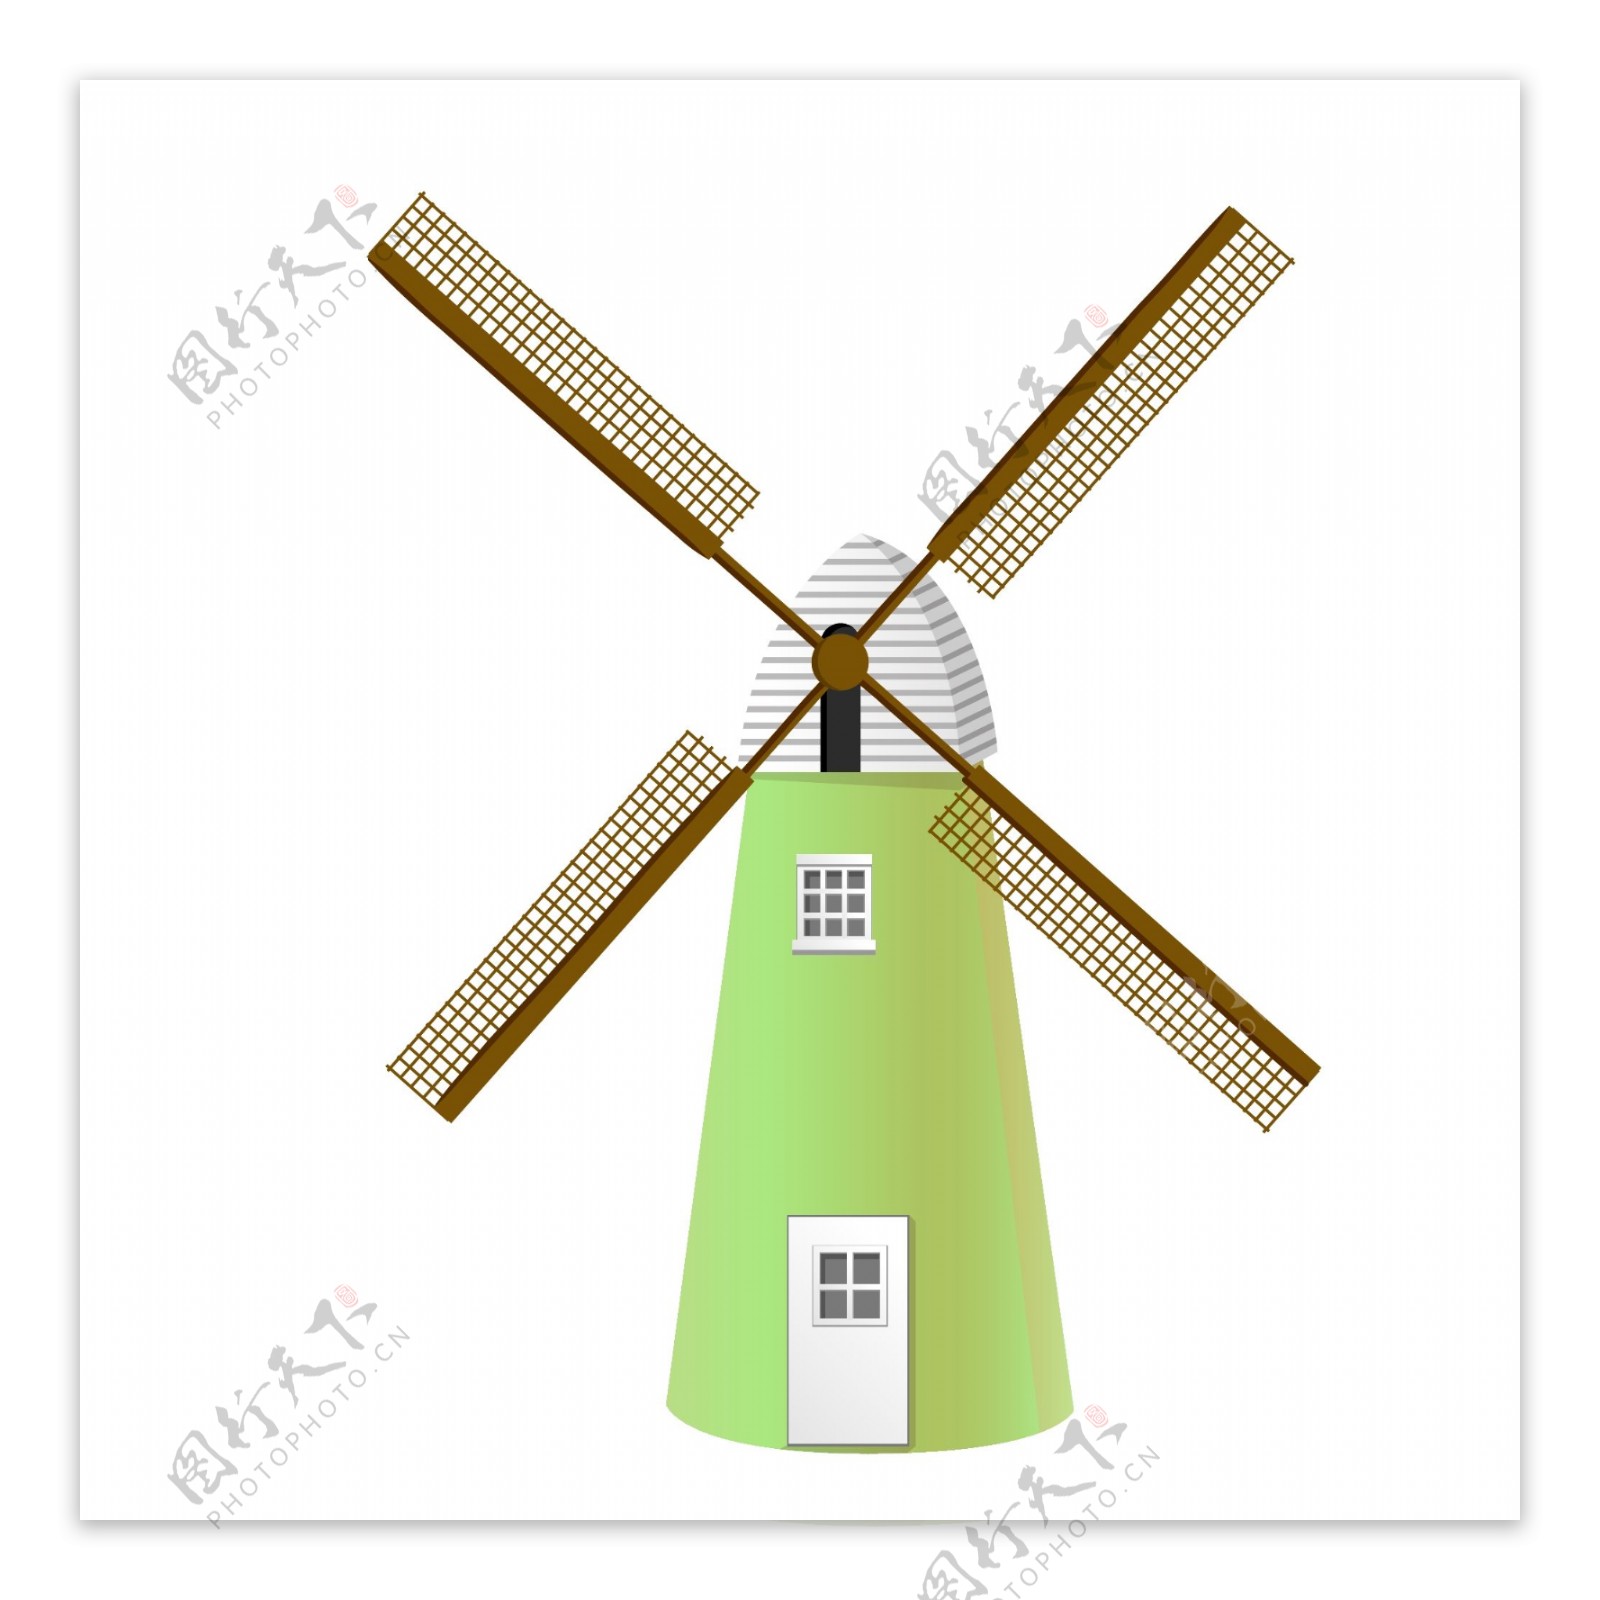 褐色风车和绿色建筑物